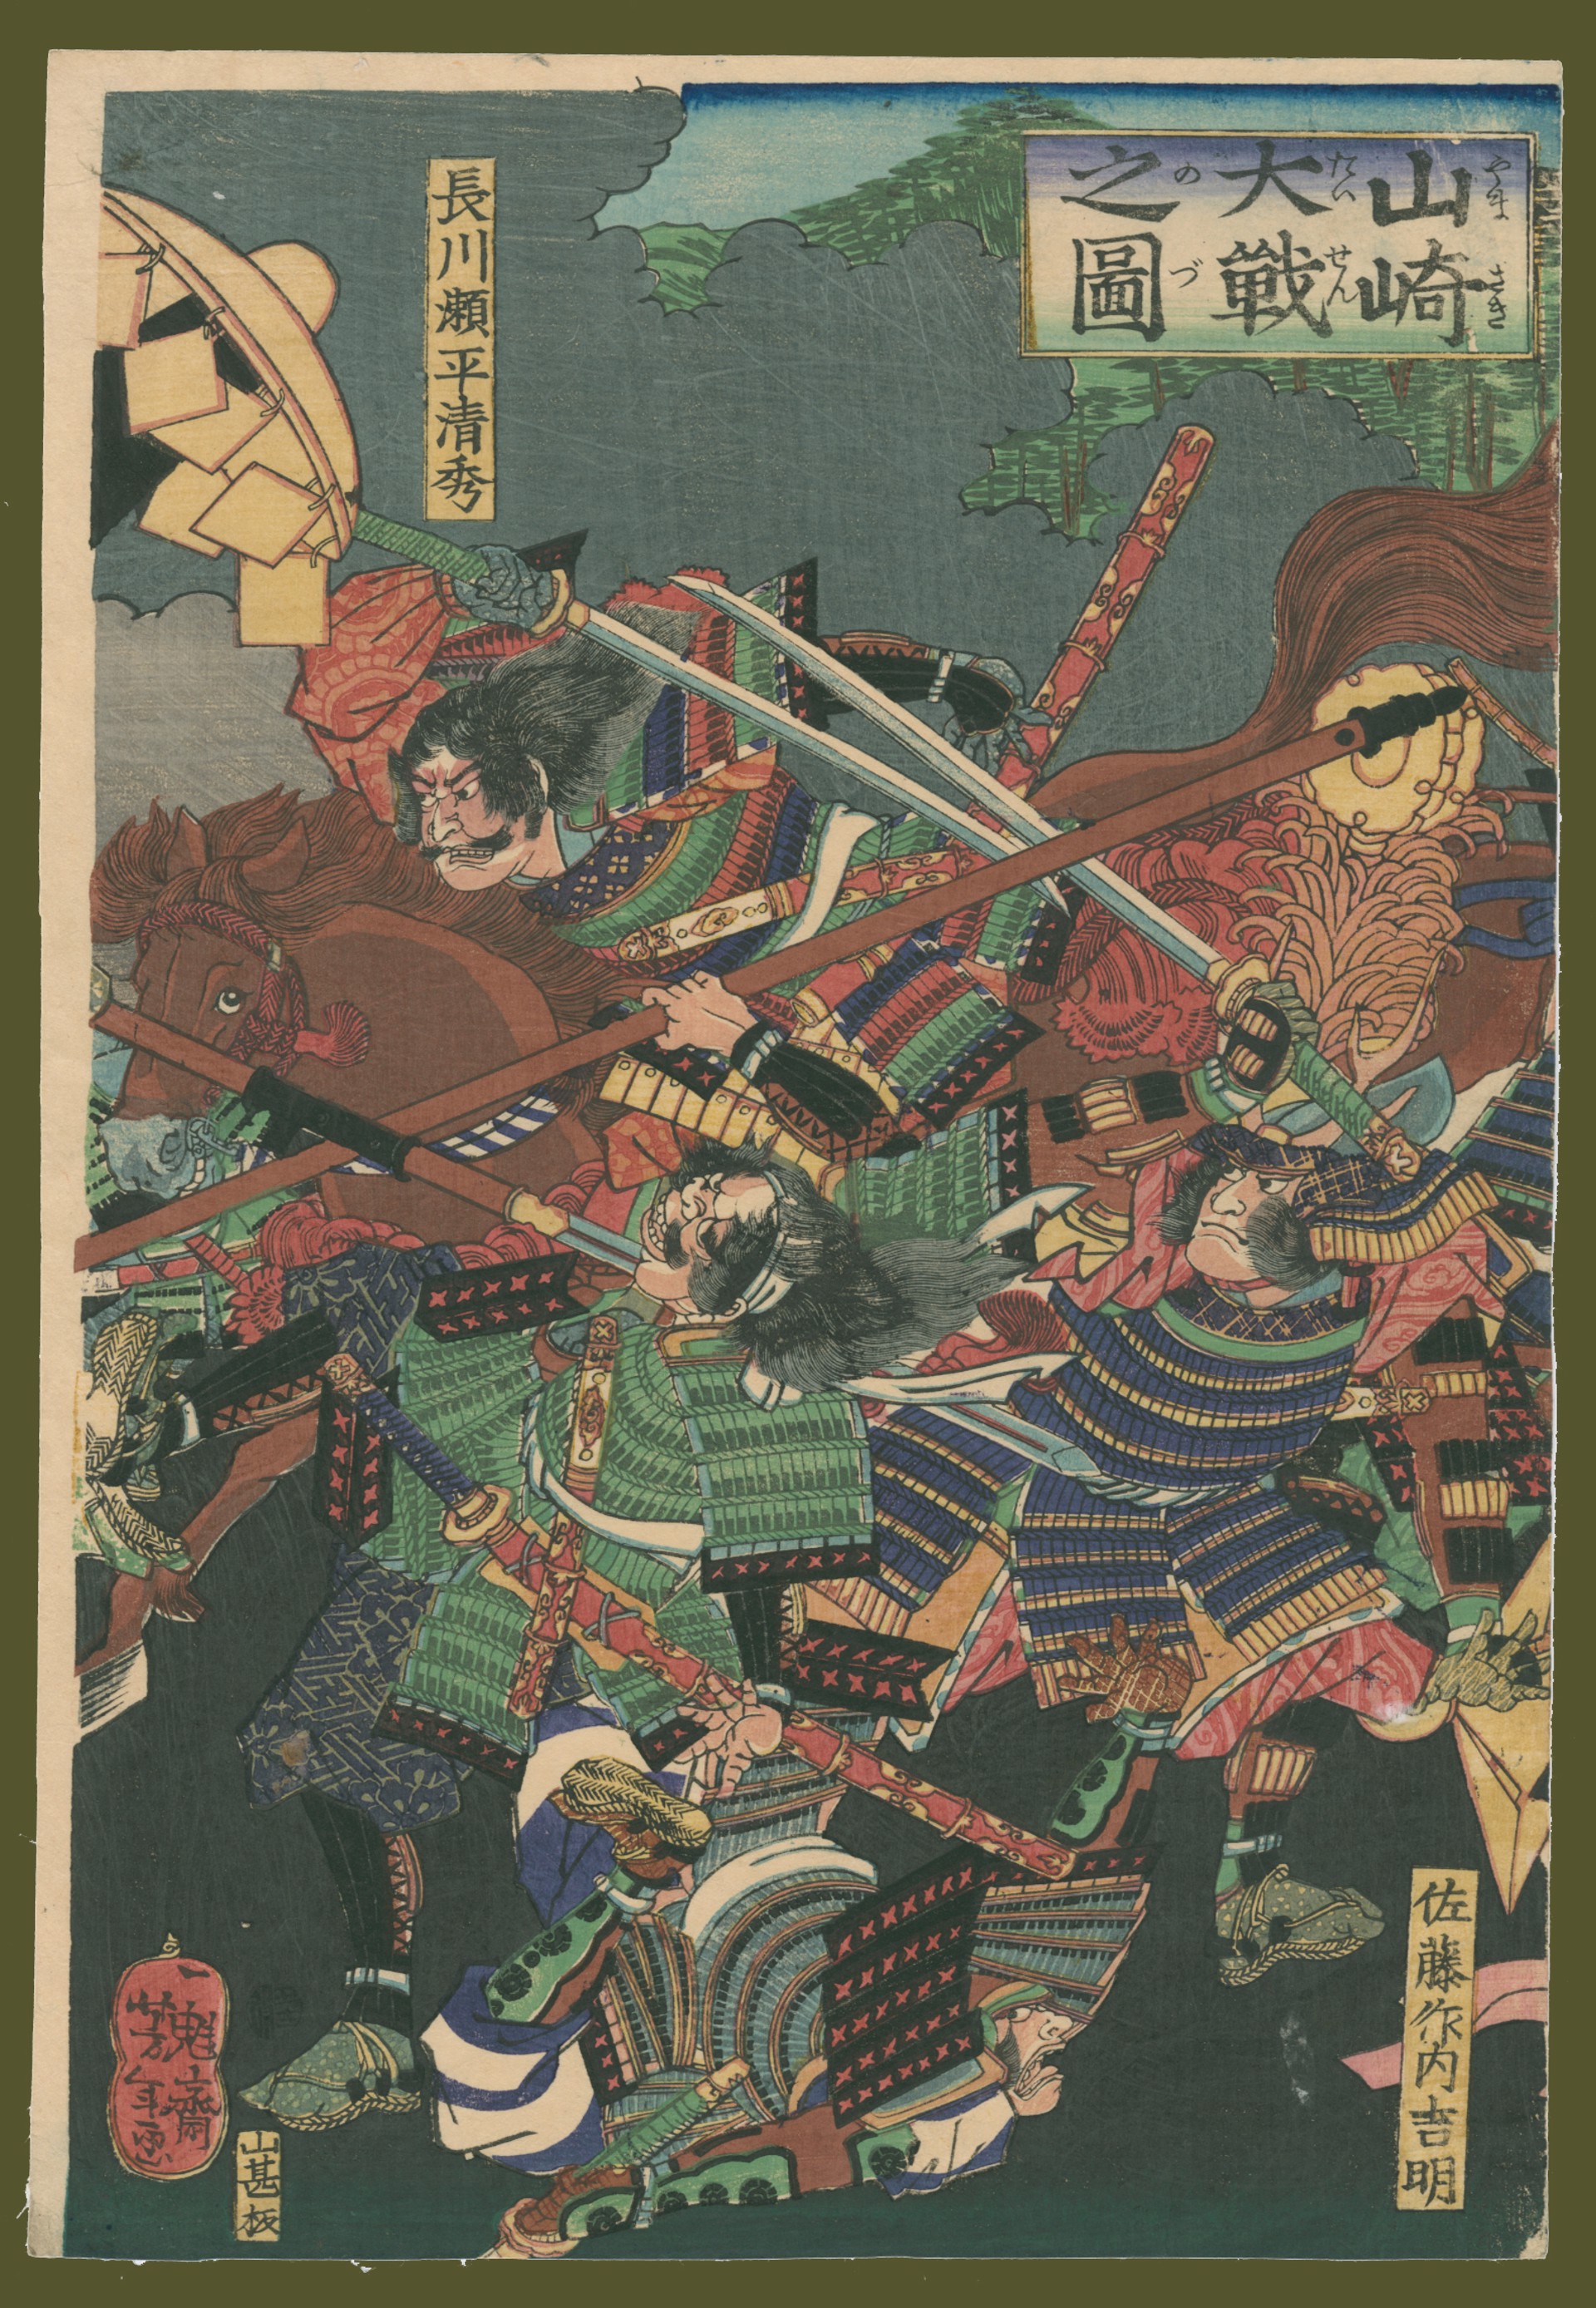 The Great Battle Yamazaki by Yoshitoshi